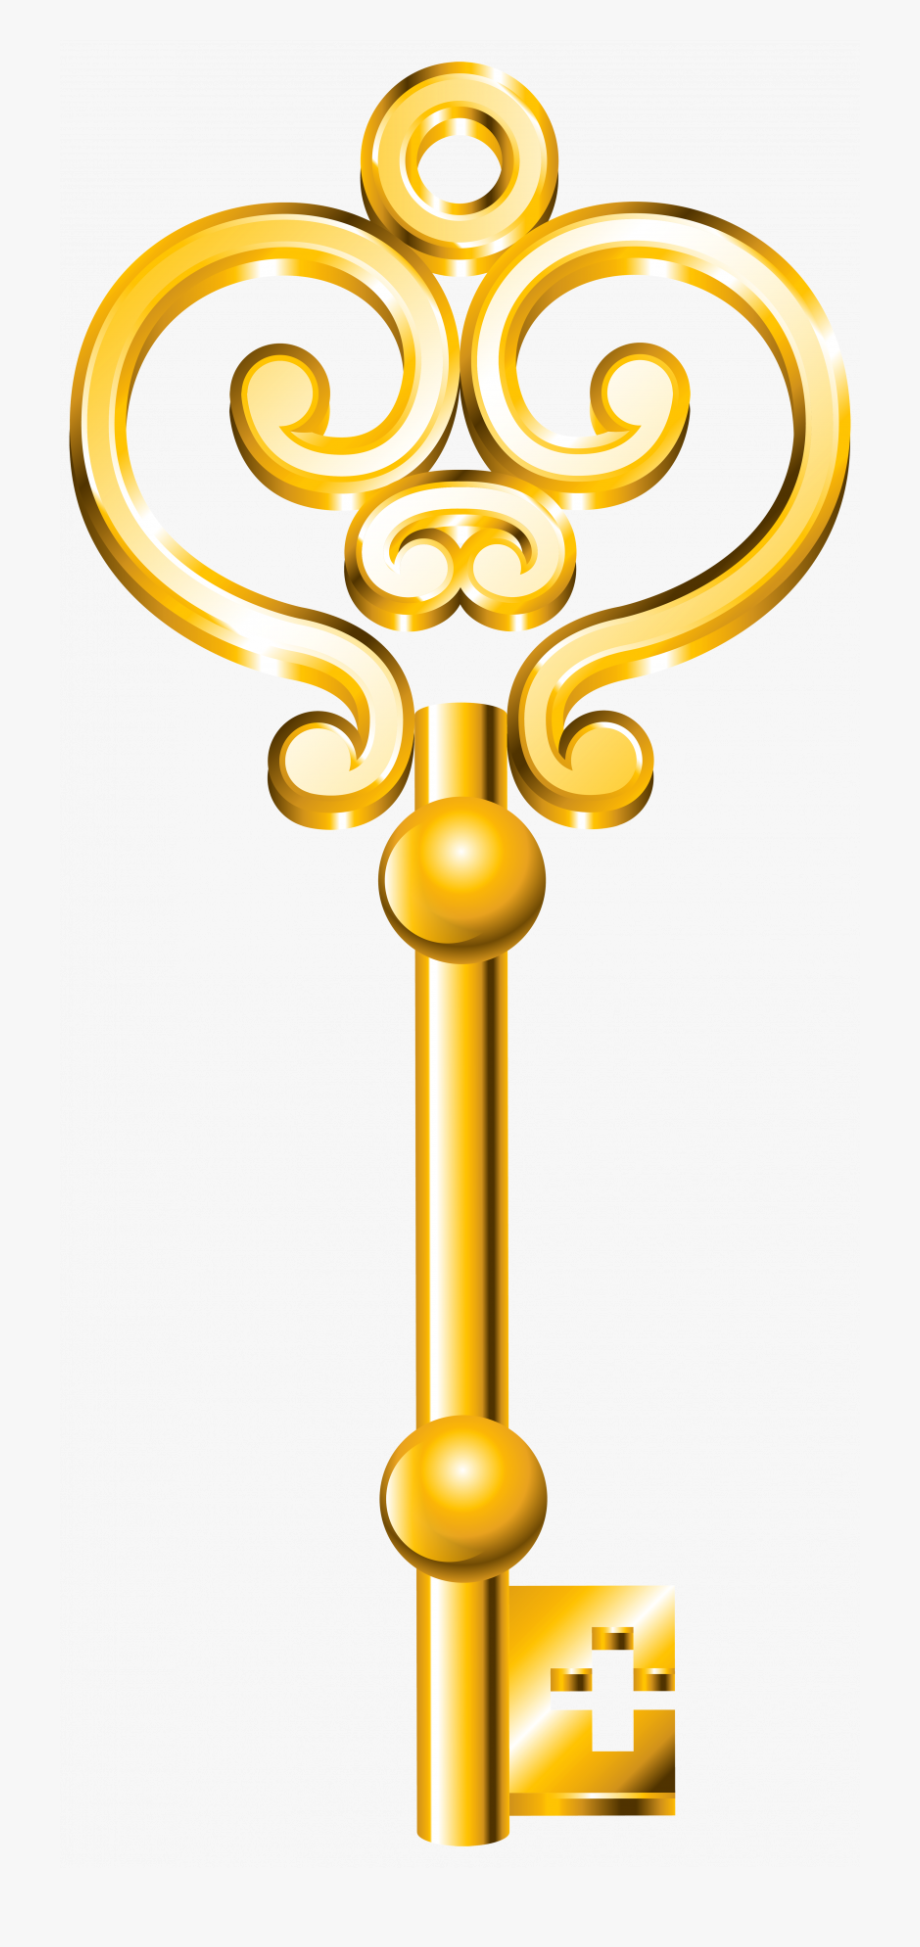 keys clipart gold key